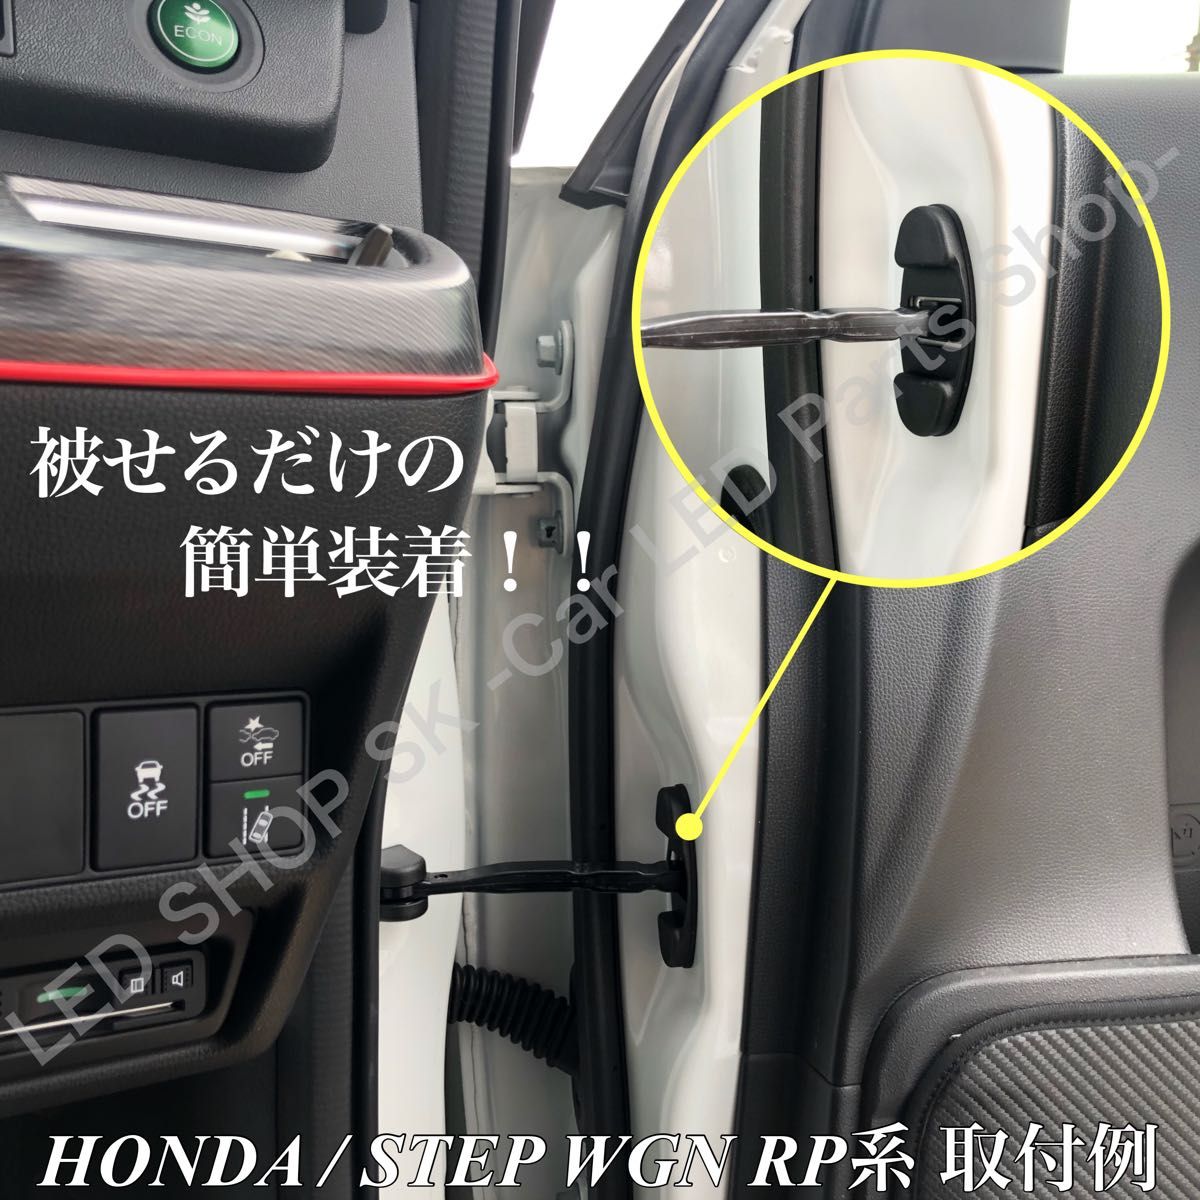 ステップワゴン RP1 RP2 RP3 RP4 RP5 ドア ストッパー カバー ドア ヒンジカバー 車体側 ドア側 6点セット